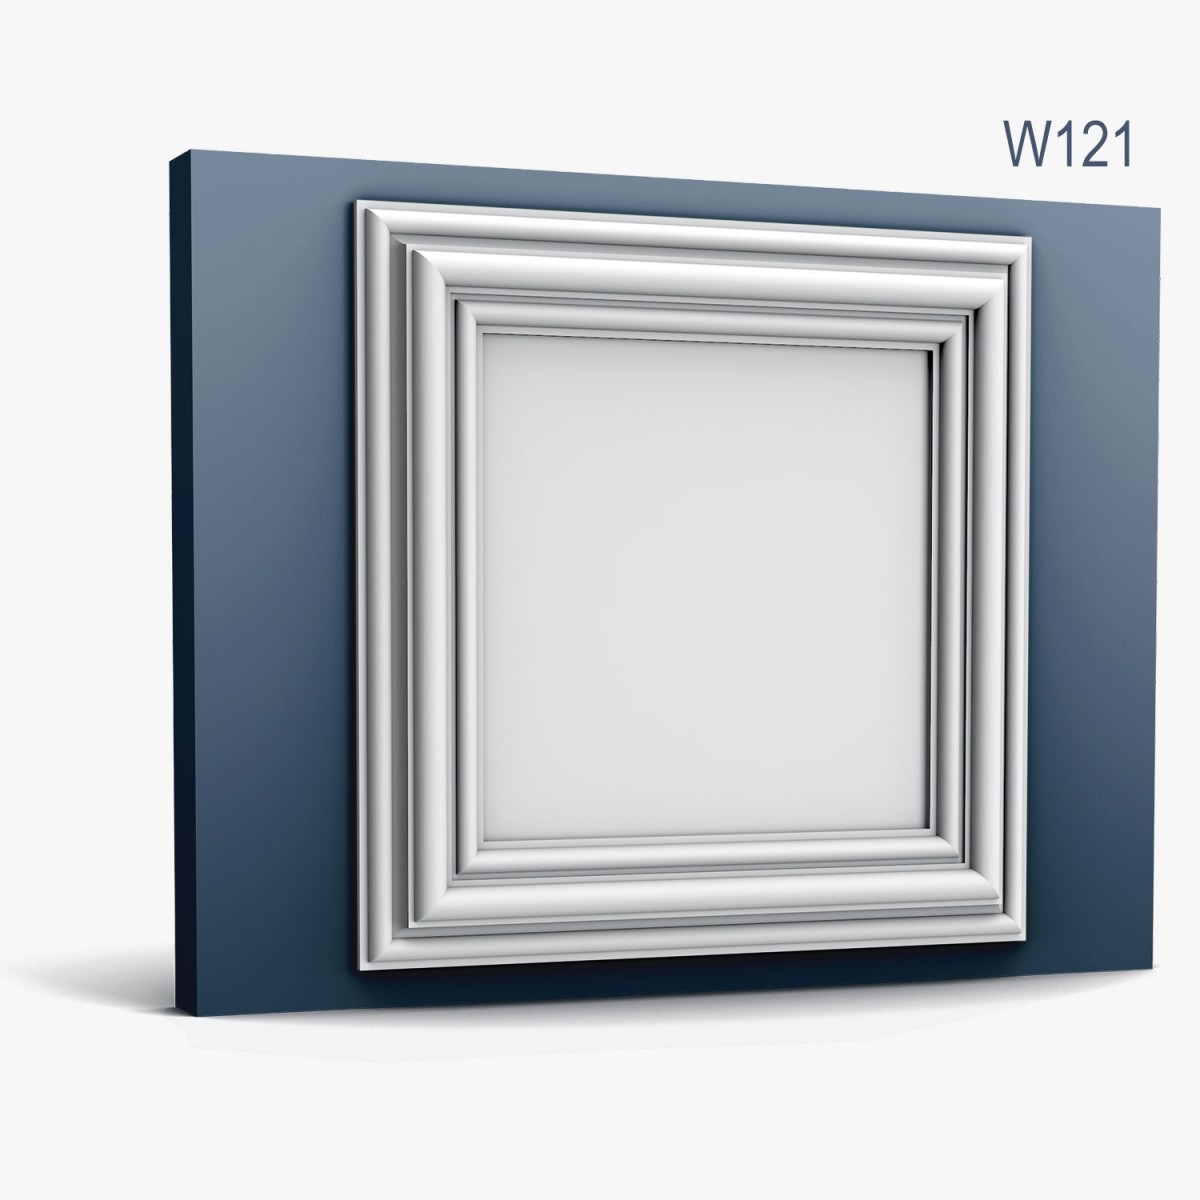 Panoul decorativ W121, 50 X 50 X 3.2 cm, Orac Decor, Elemente decorative, Profile Decorative 